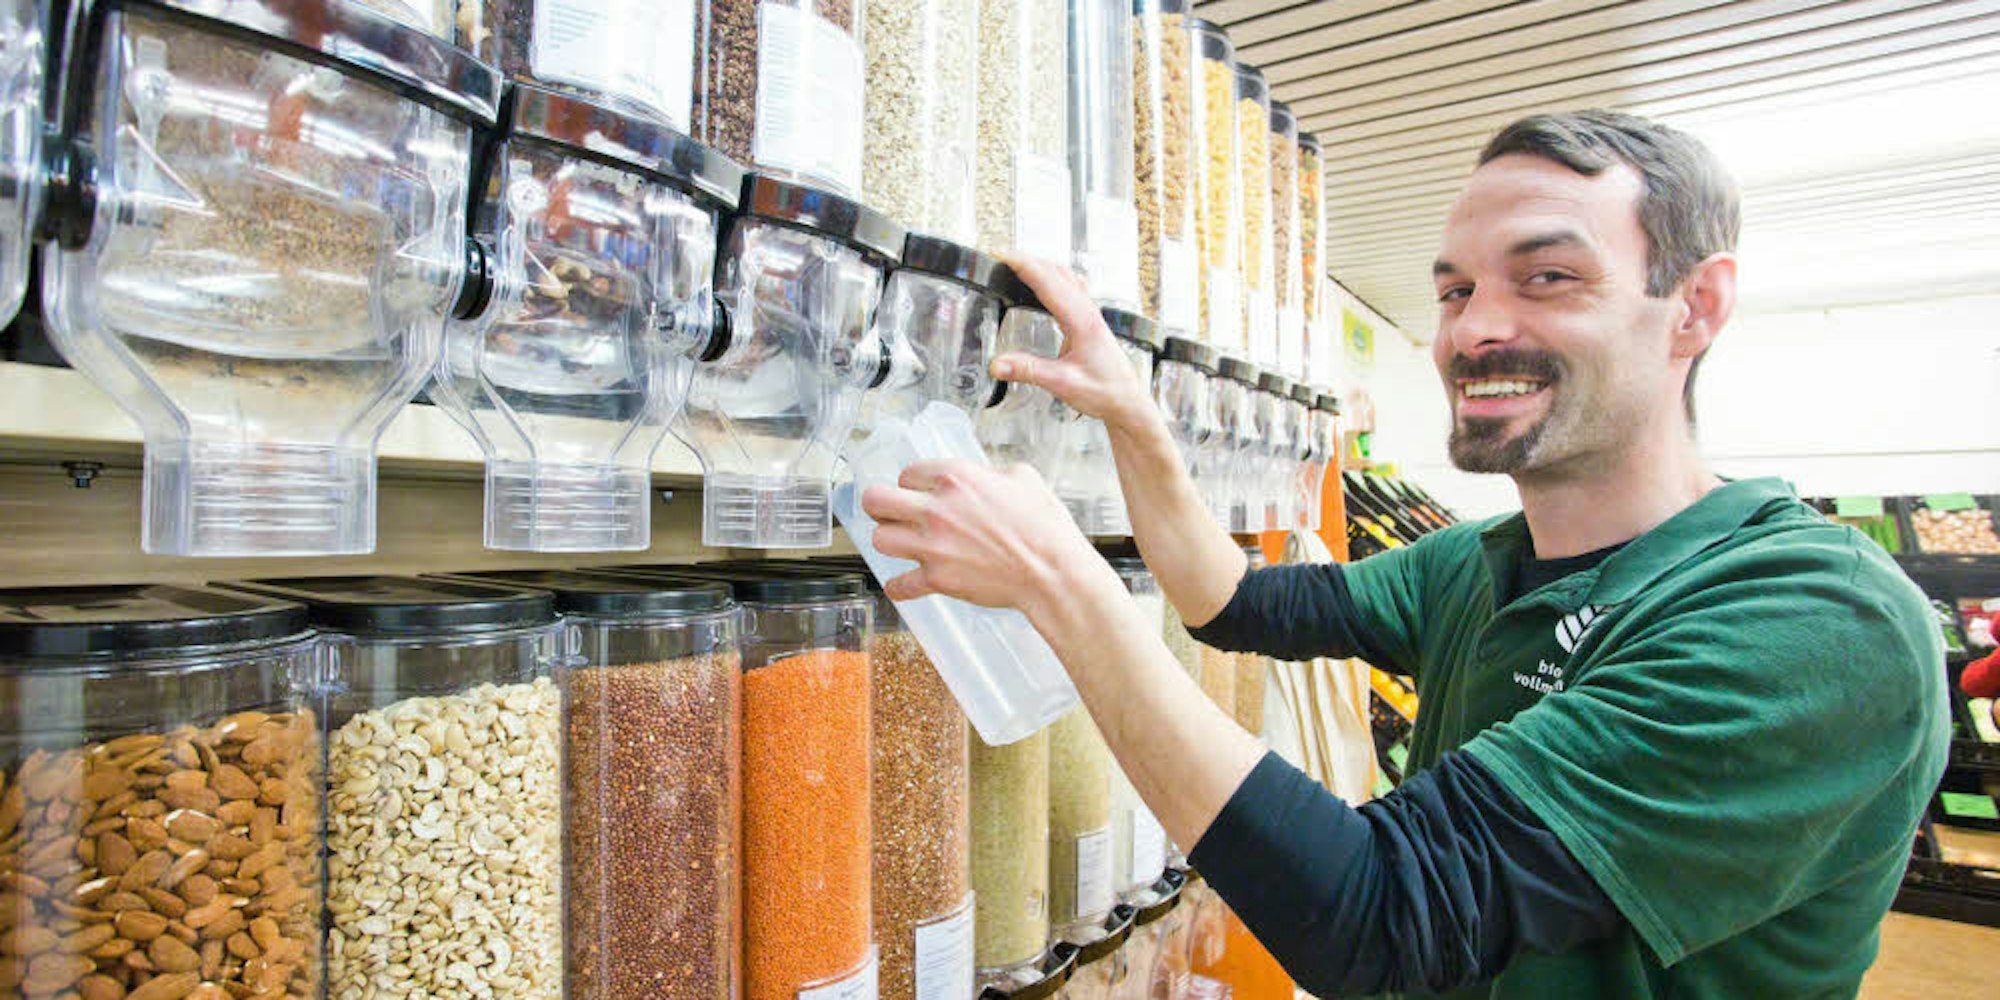 Ganz einfach in die mitgebrachte Dose abfüllen kann man die unverpackten Lebensmittel im Biomarkt von Dennis Stroezel.